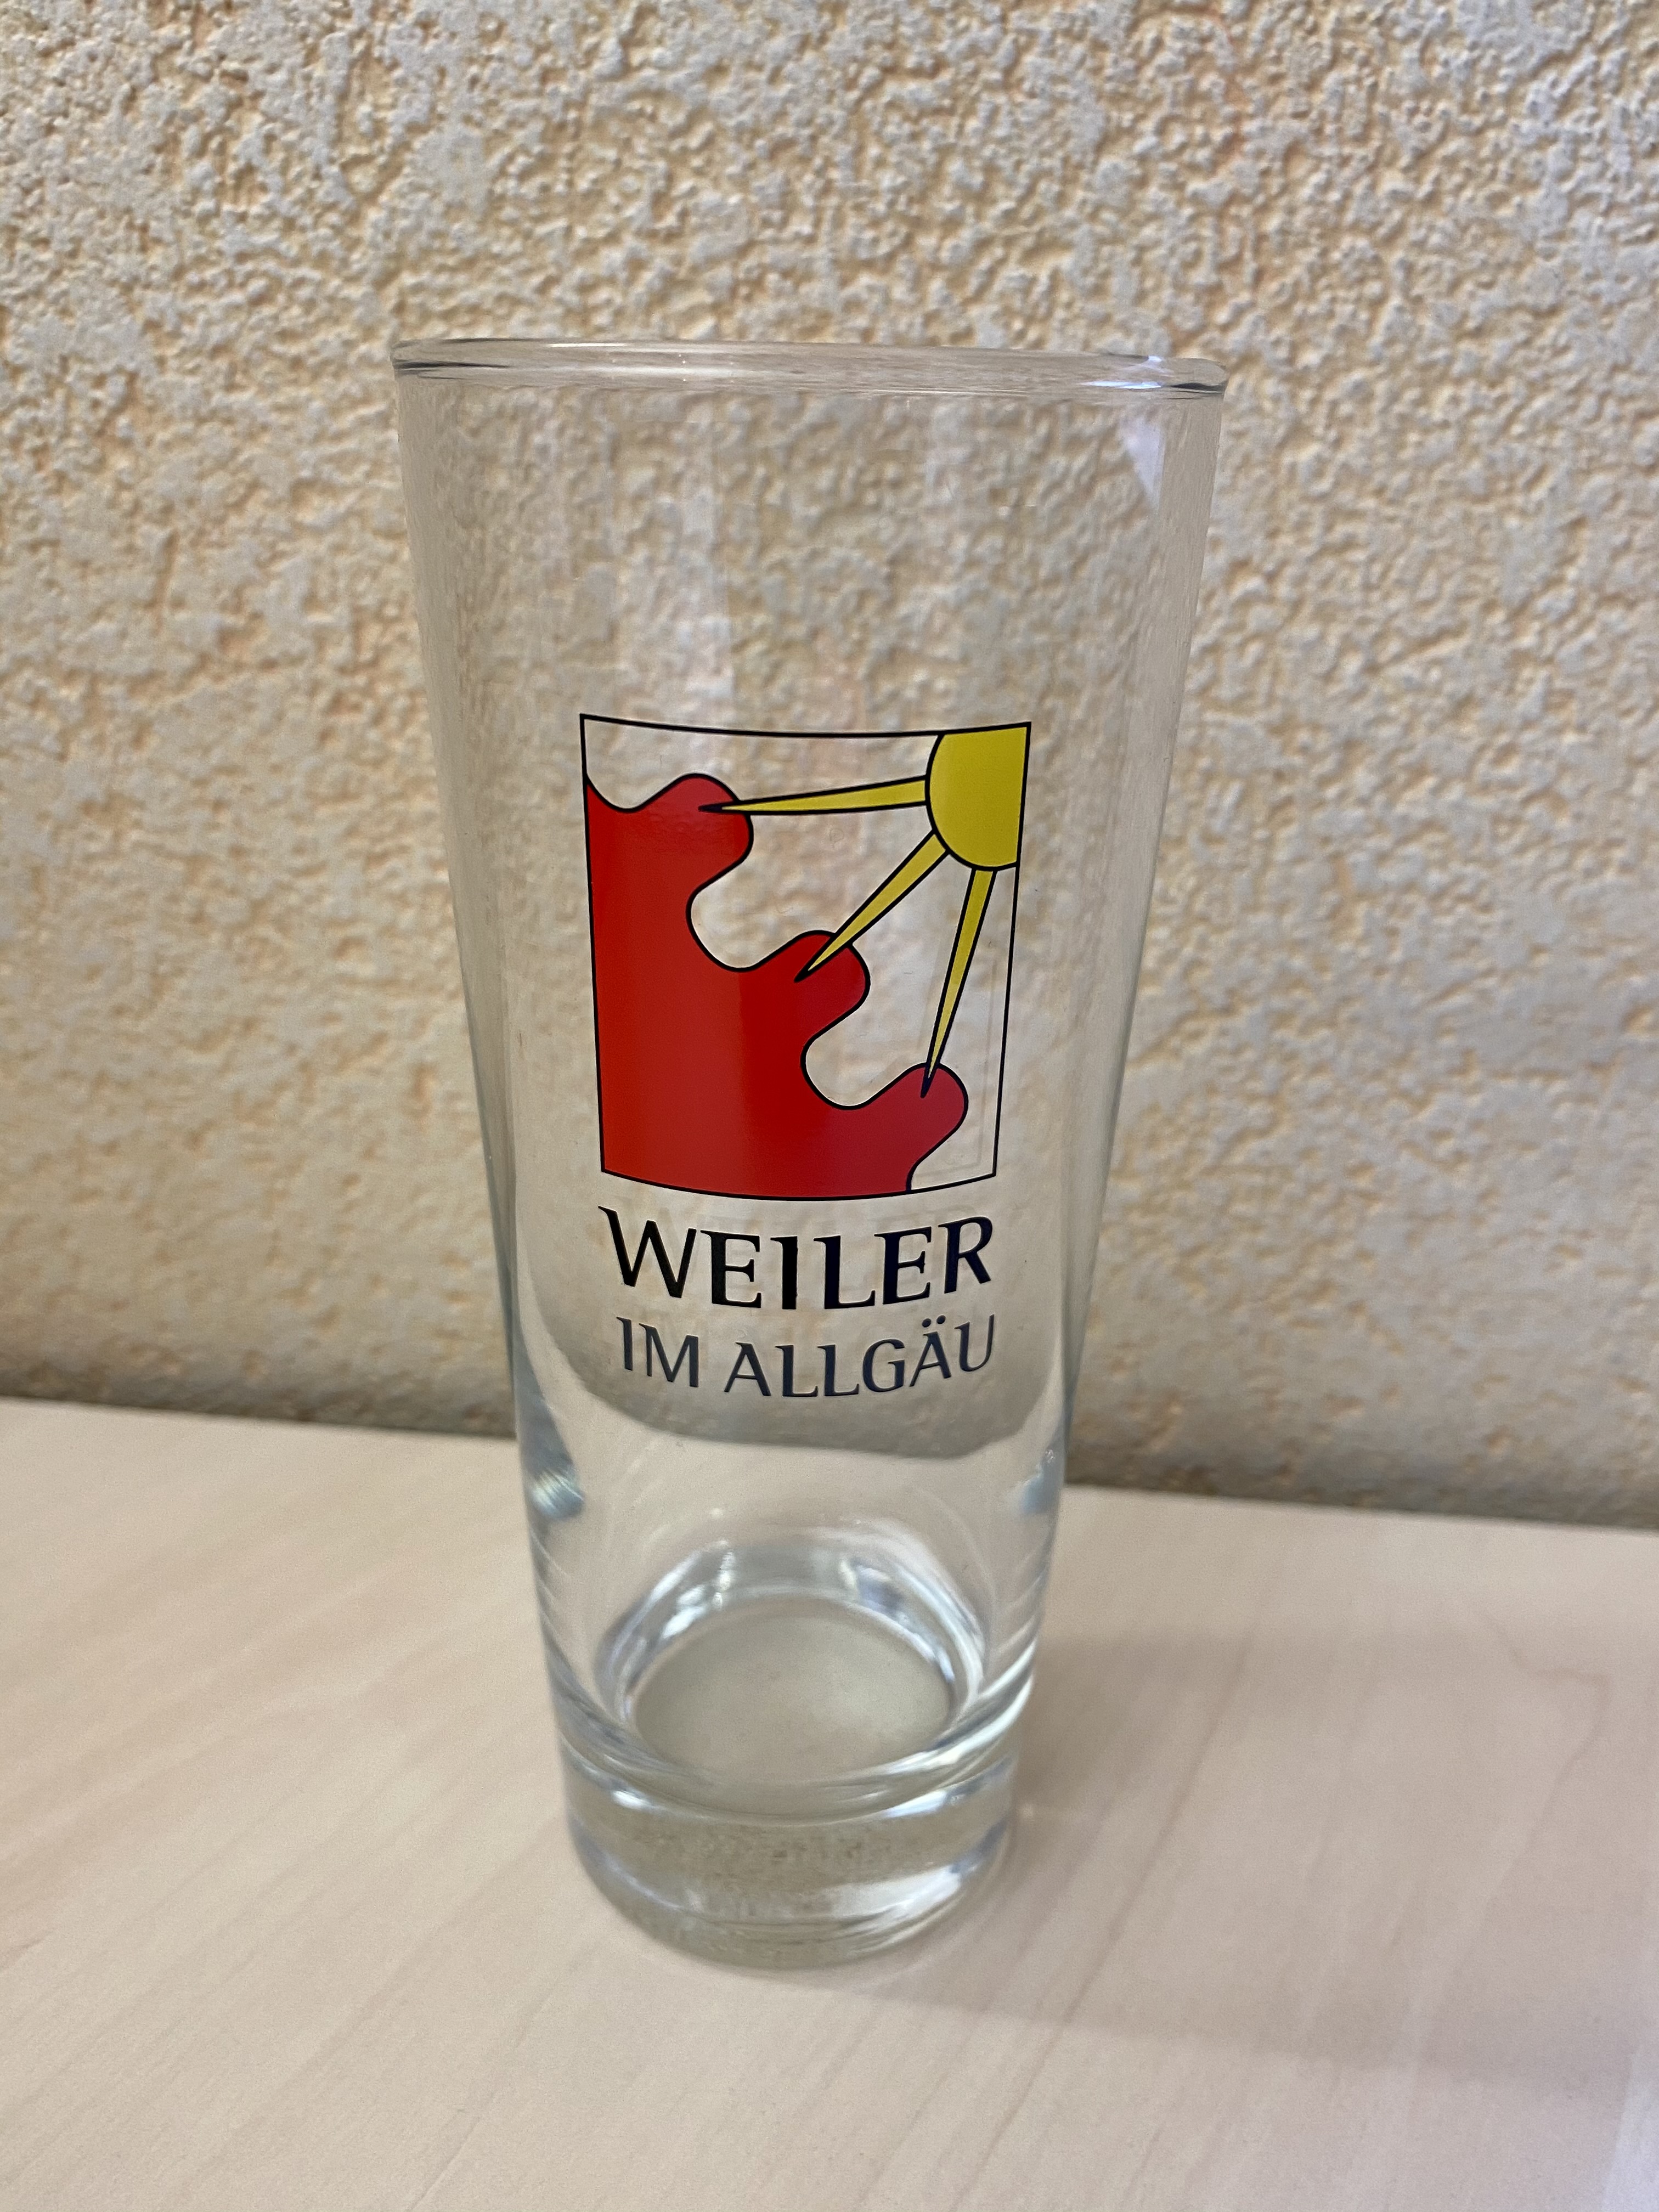  durchsichtiges Glas mit Weiler-Logo in der Mitte - das Bild wird mit Klick vergrößert 